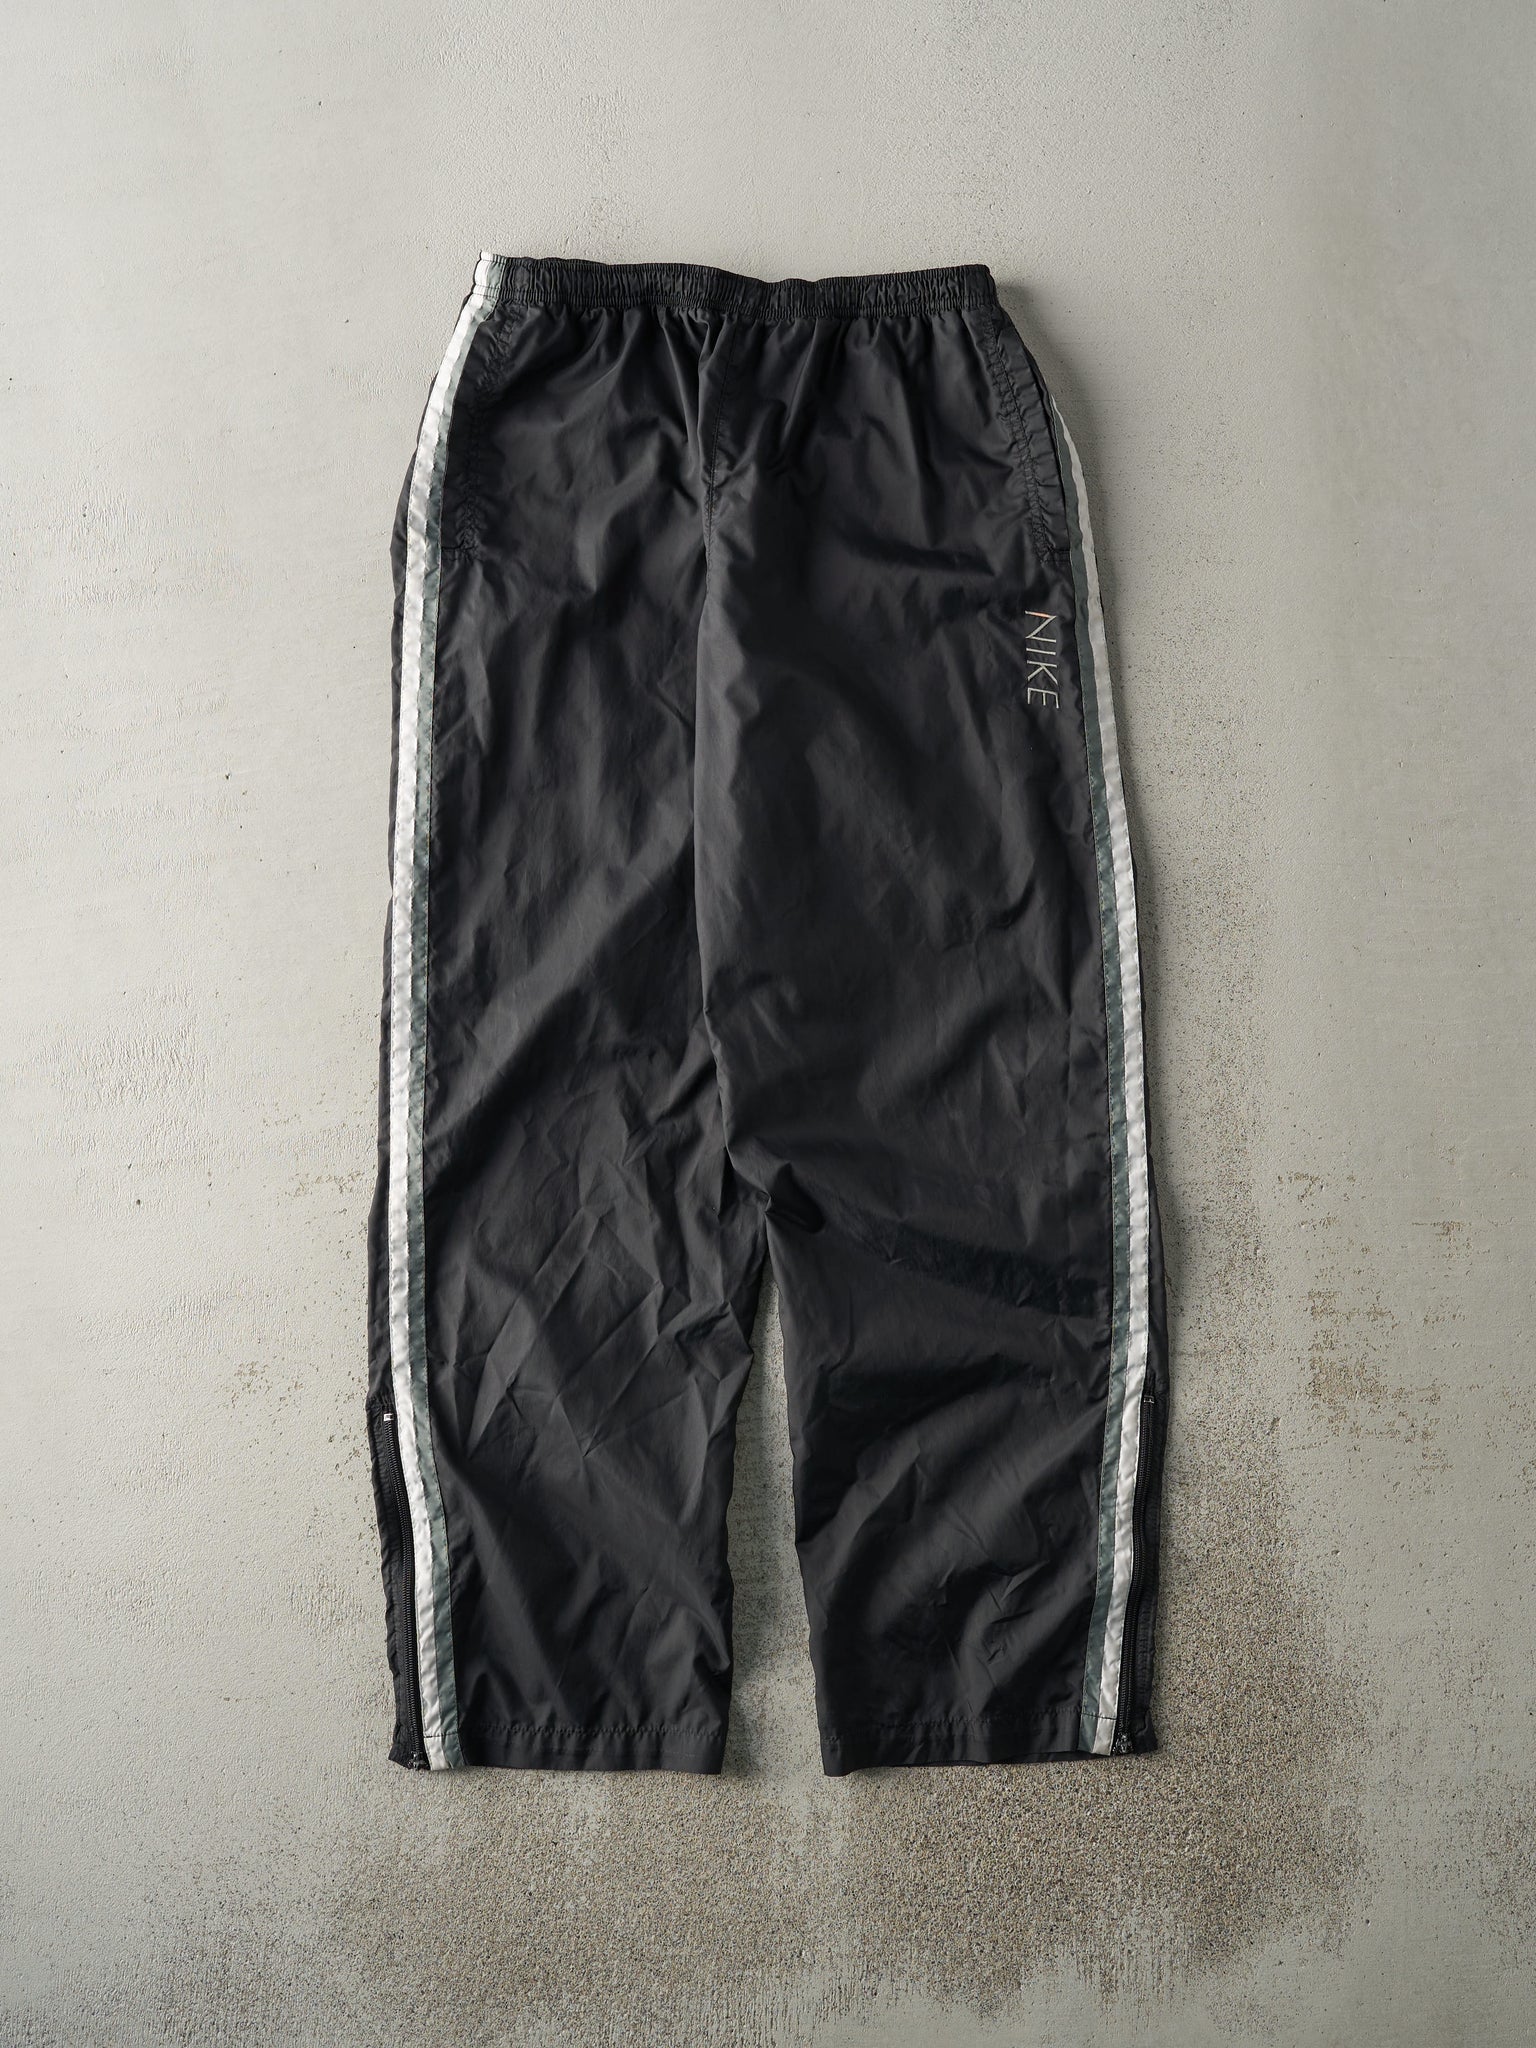 Vintage Y2K Black & Green Nike Embroidered Windbreaker Pants (31x31)